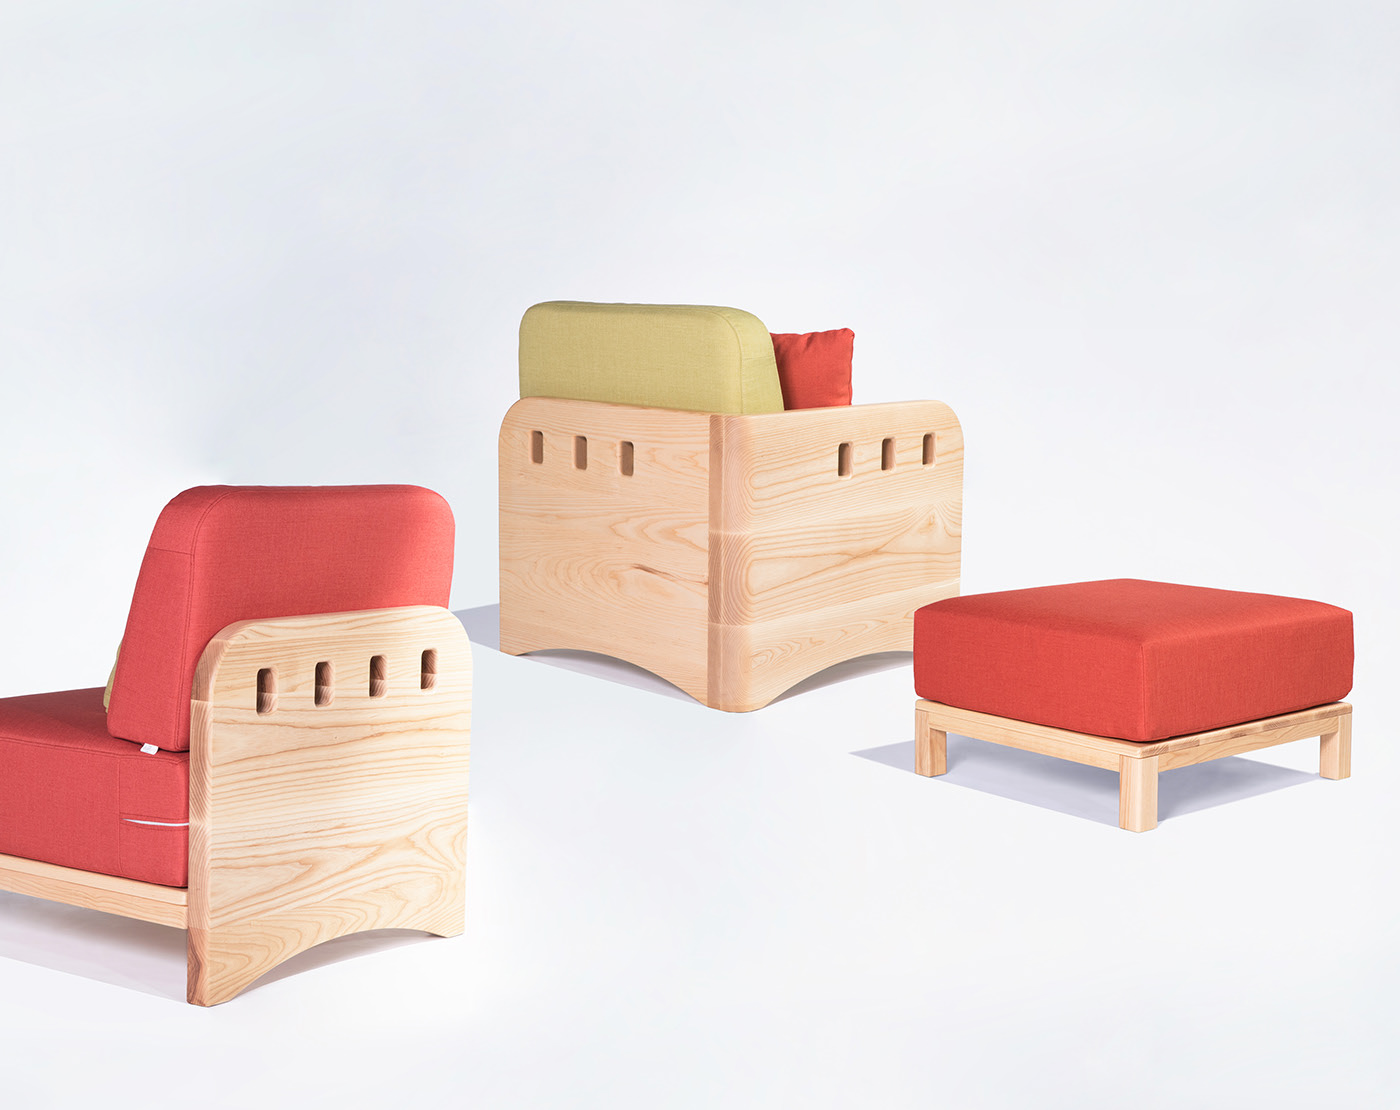 可以组装不同组合的组合式木制沙发